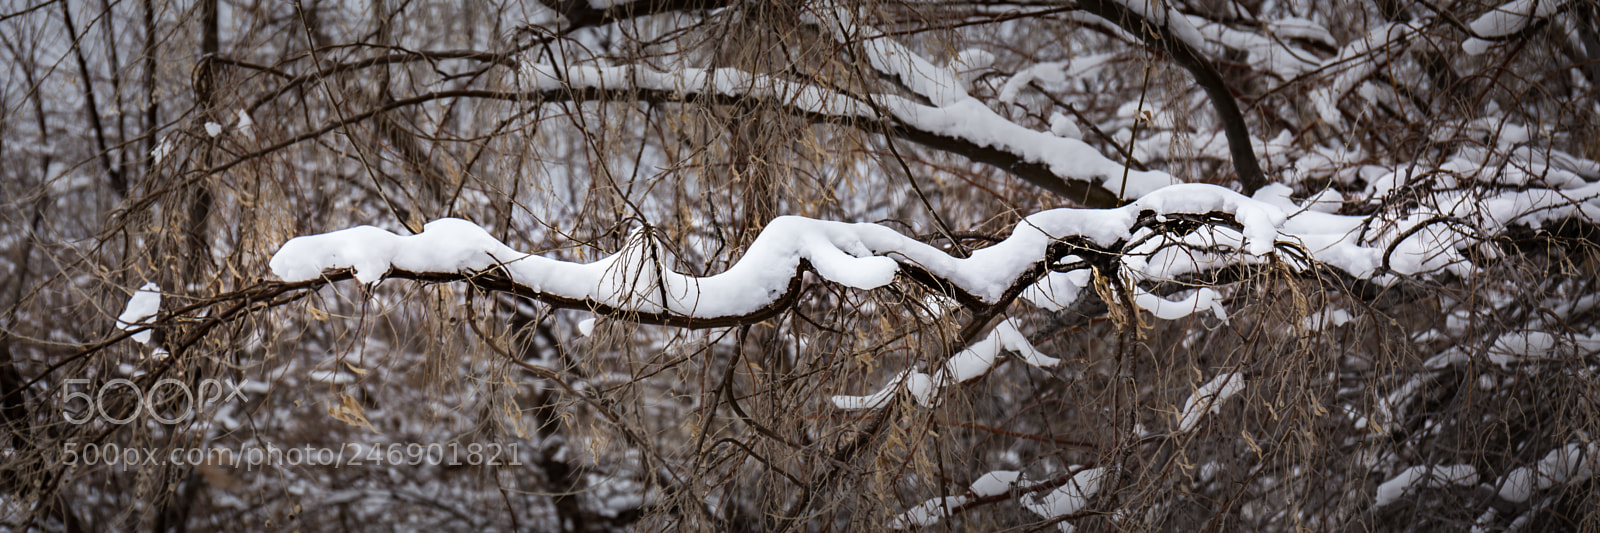 Canon EOS 6D sample photo. Snow laden branches photography